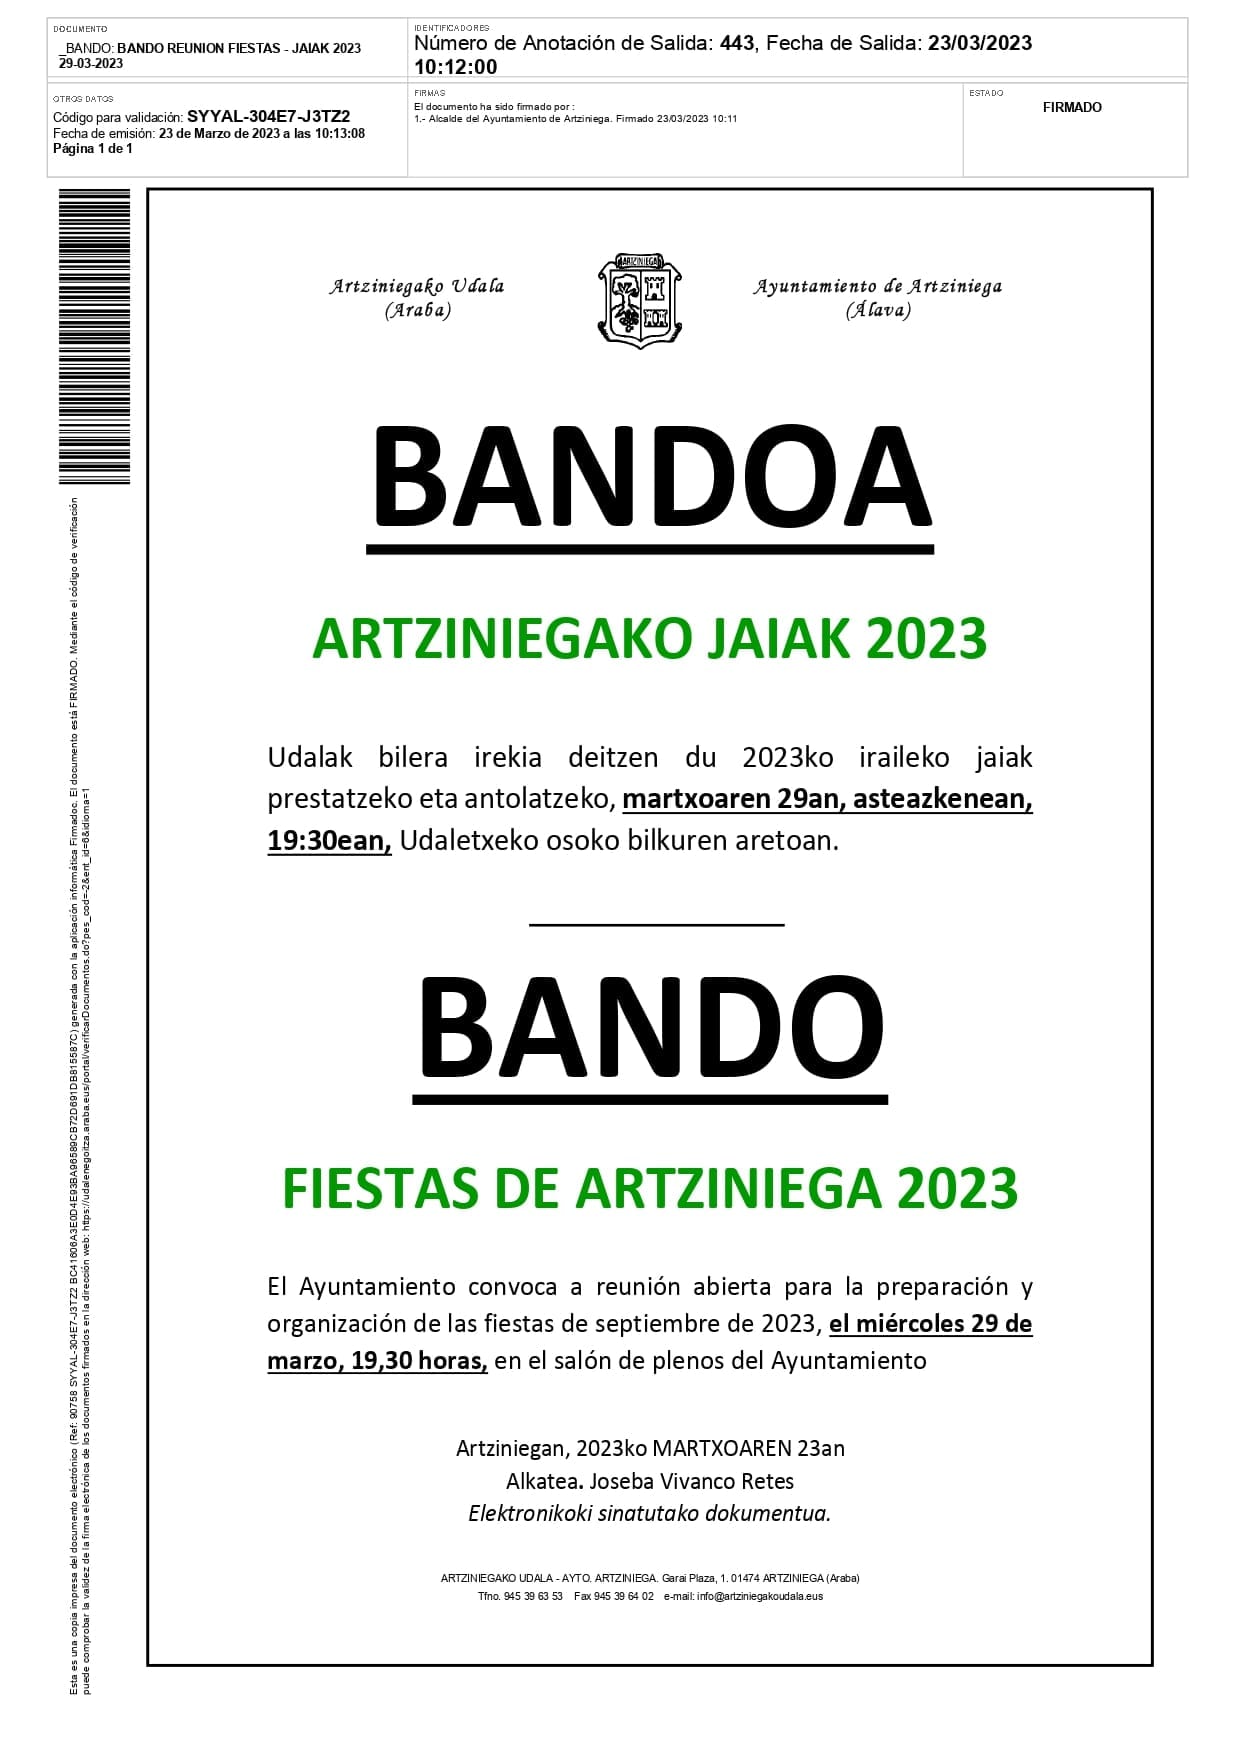 BANDO: Reunión para organizar las Fiestas de 2023 el miércoles a las 19:30 en el Salón de Plenos del Ayuntamiento. ¡Anímate!